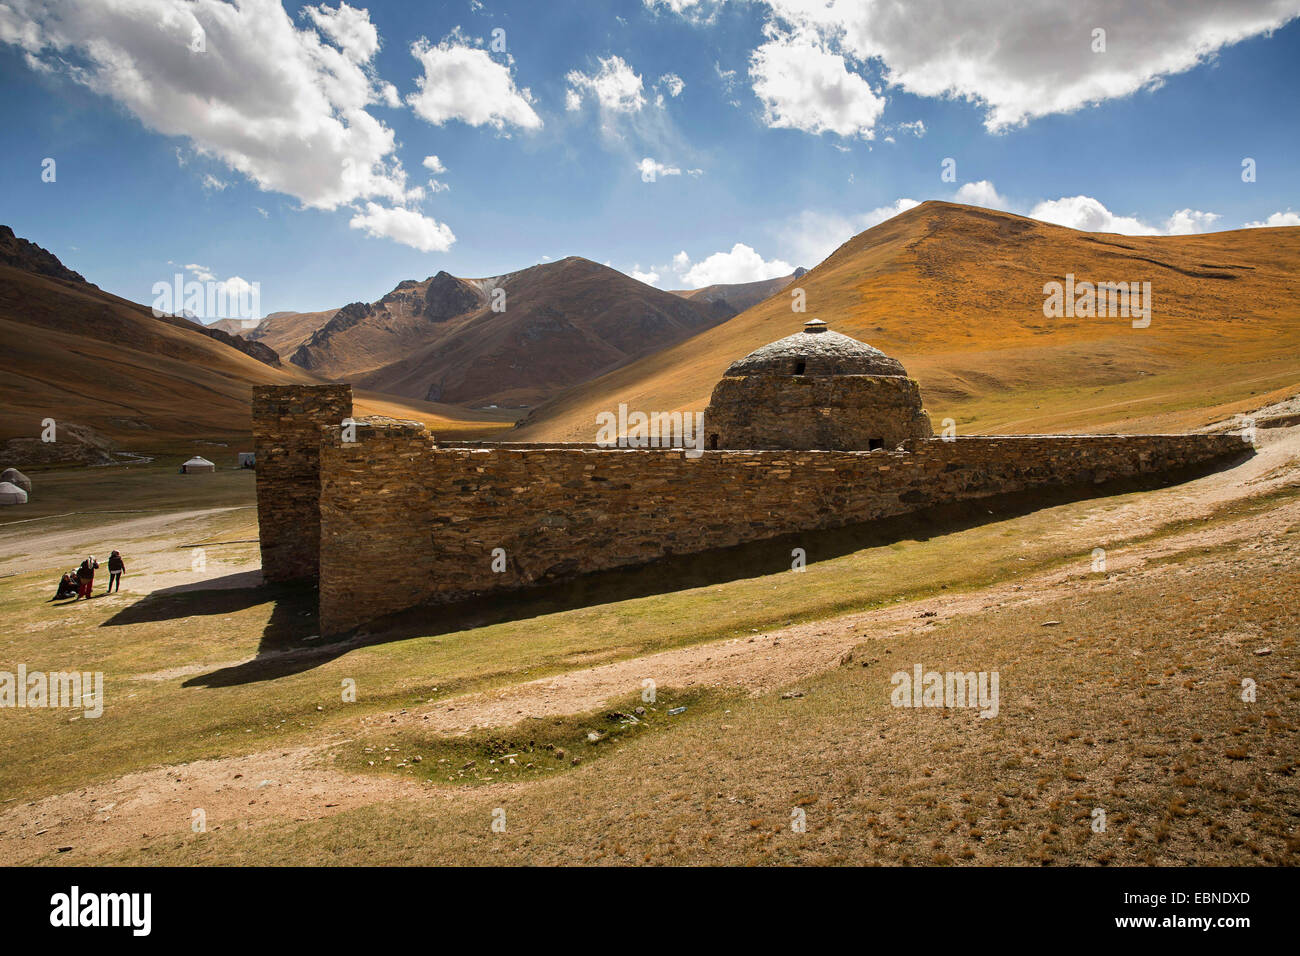 Caravanserai de Tash Rabat en la antigua Ruta de la Seda, Kirguistán, Naryn, Tash Rabat Foto de stock